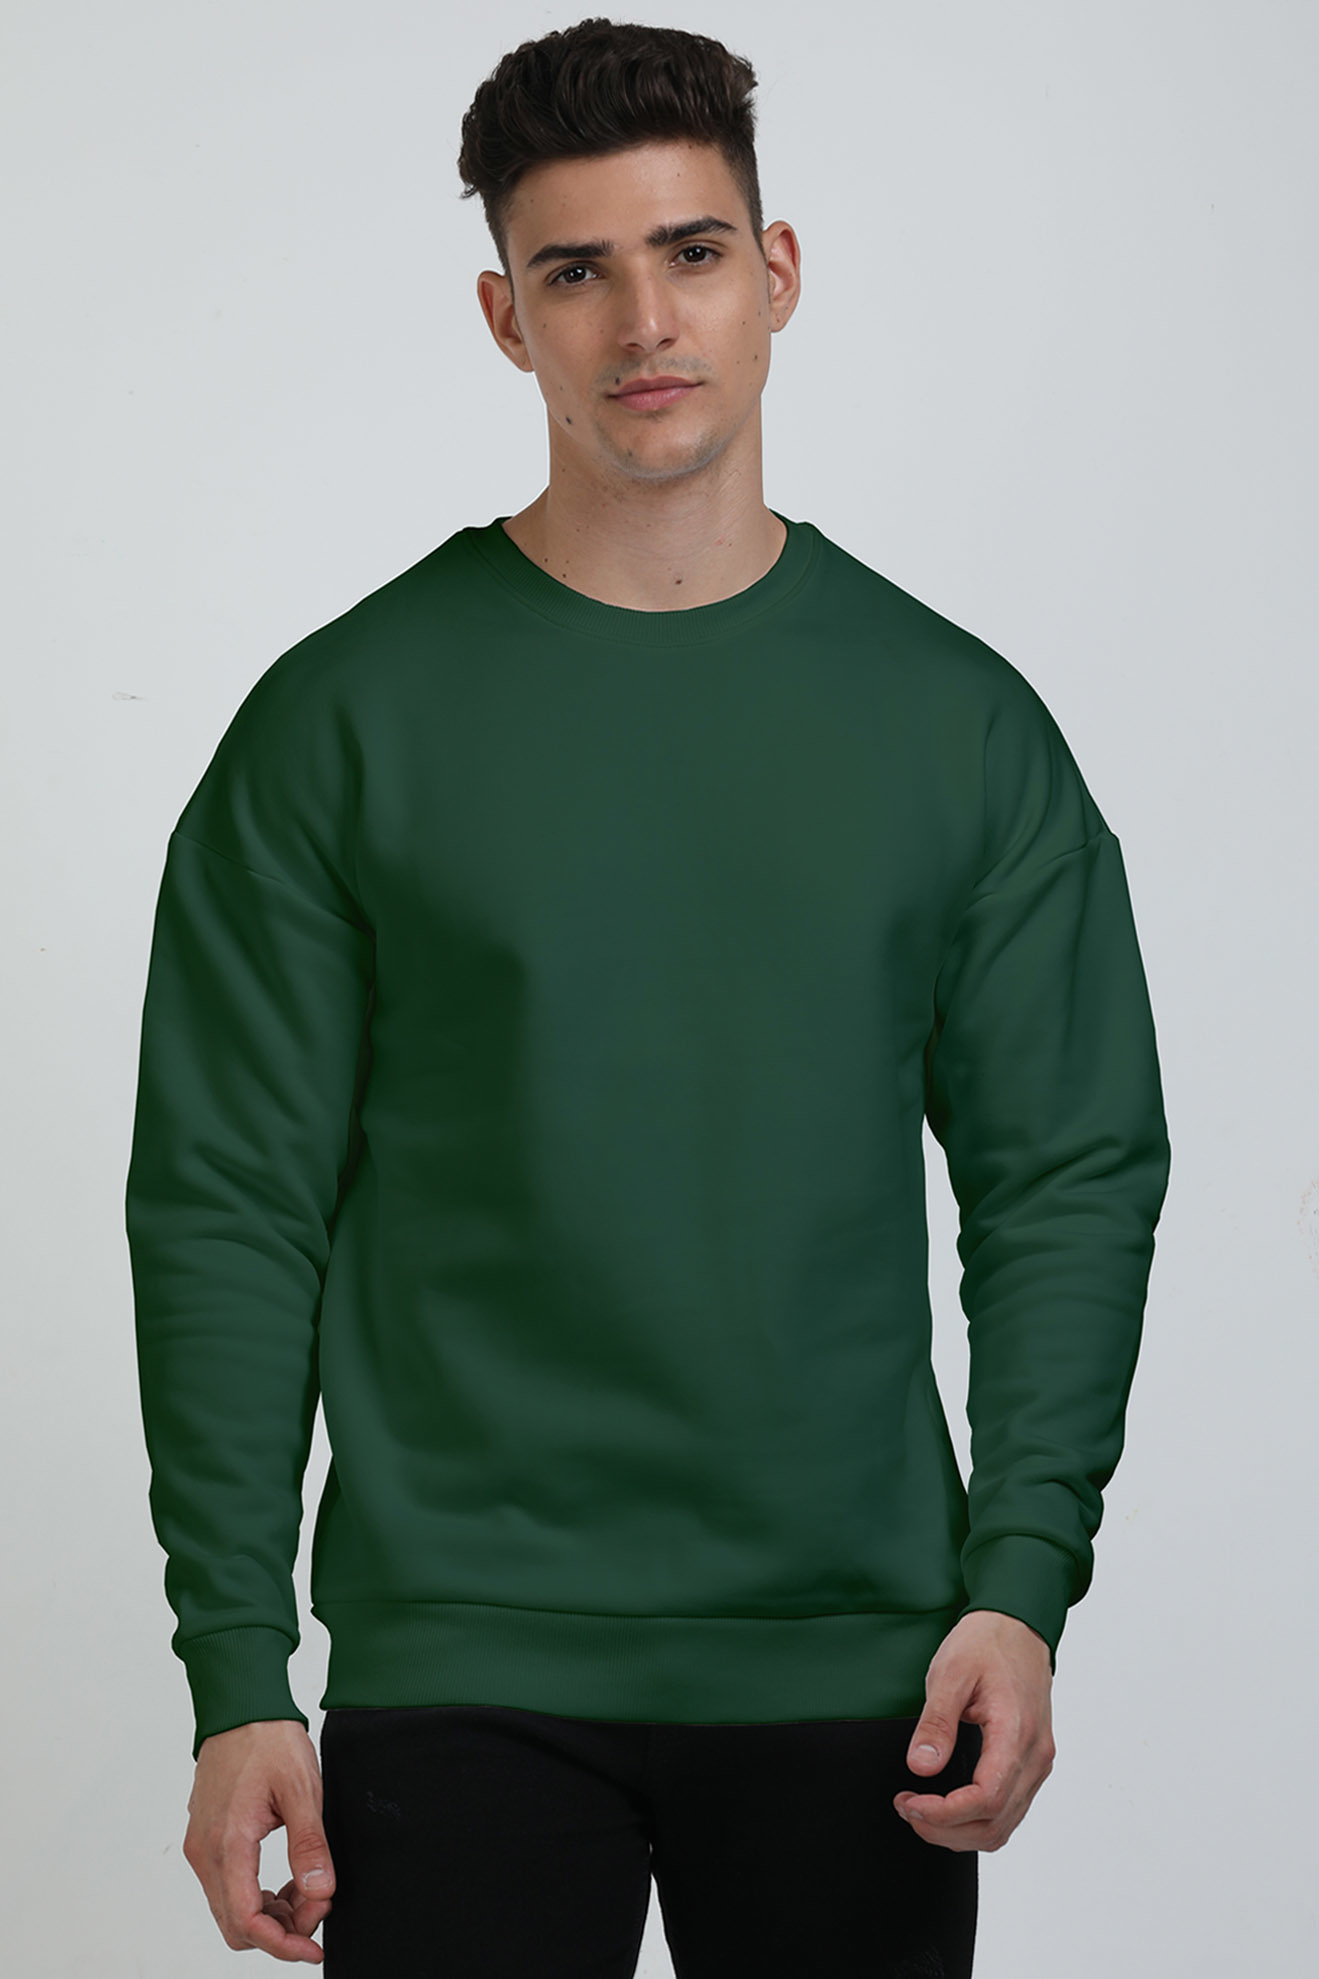 Unisex oversized Sweatshirt